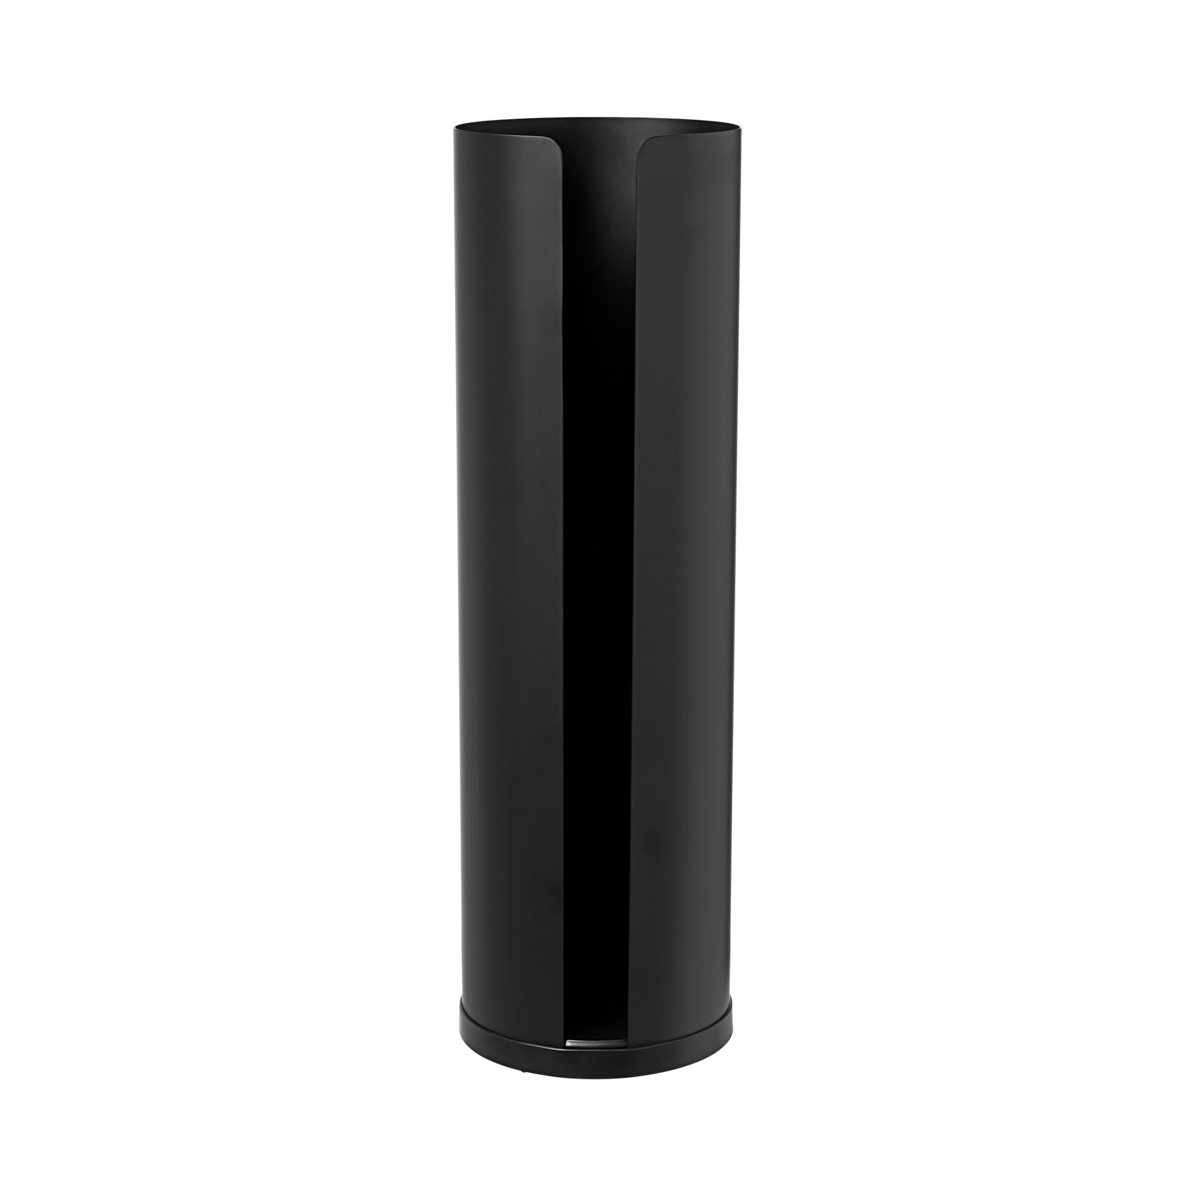 WC-Rollenhalter -NEXIO- Black Size L, Ø 13,5 cm. Material: Stahl pulverbeschichtet, Kunststoff. Von Blomus.